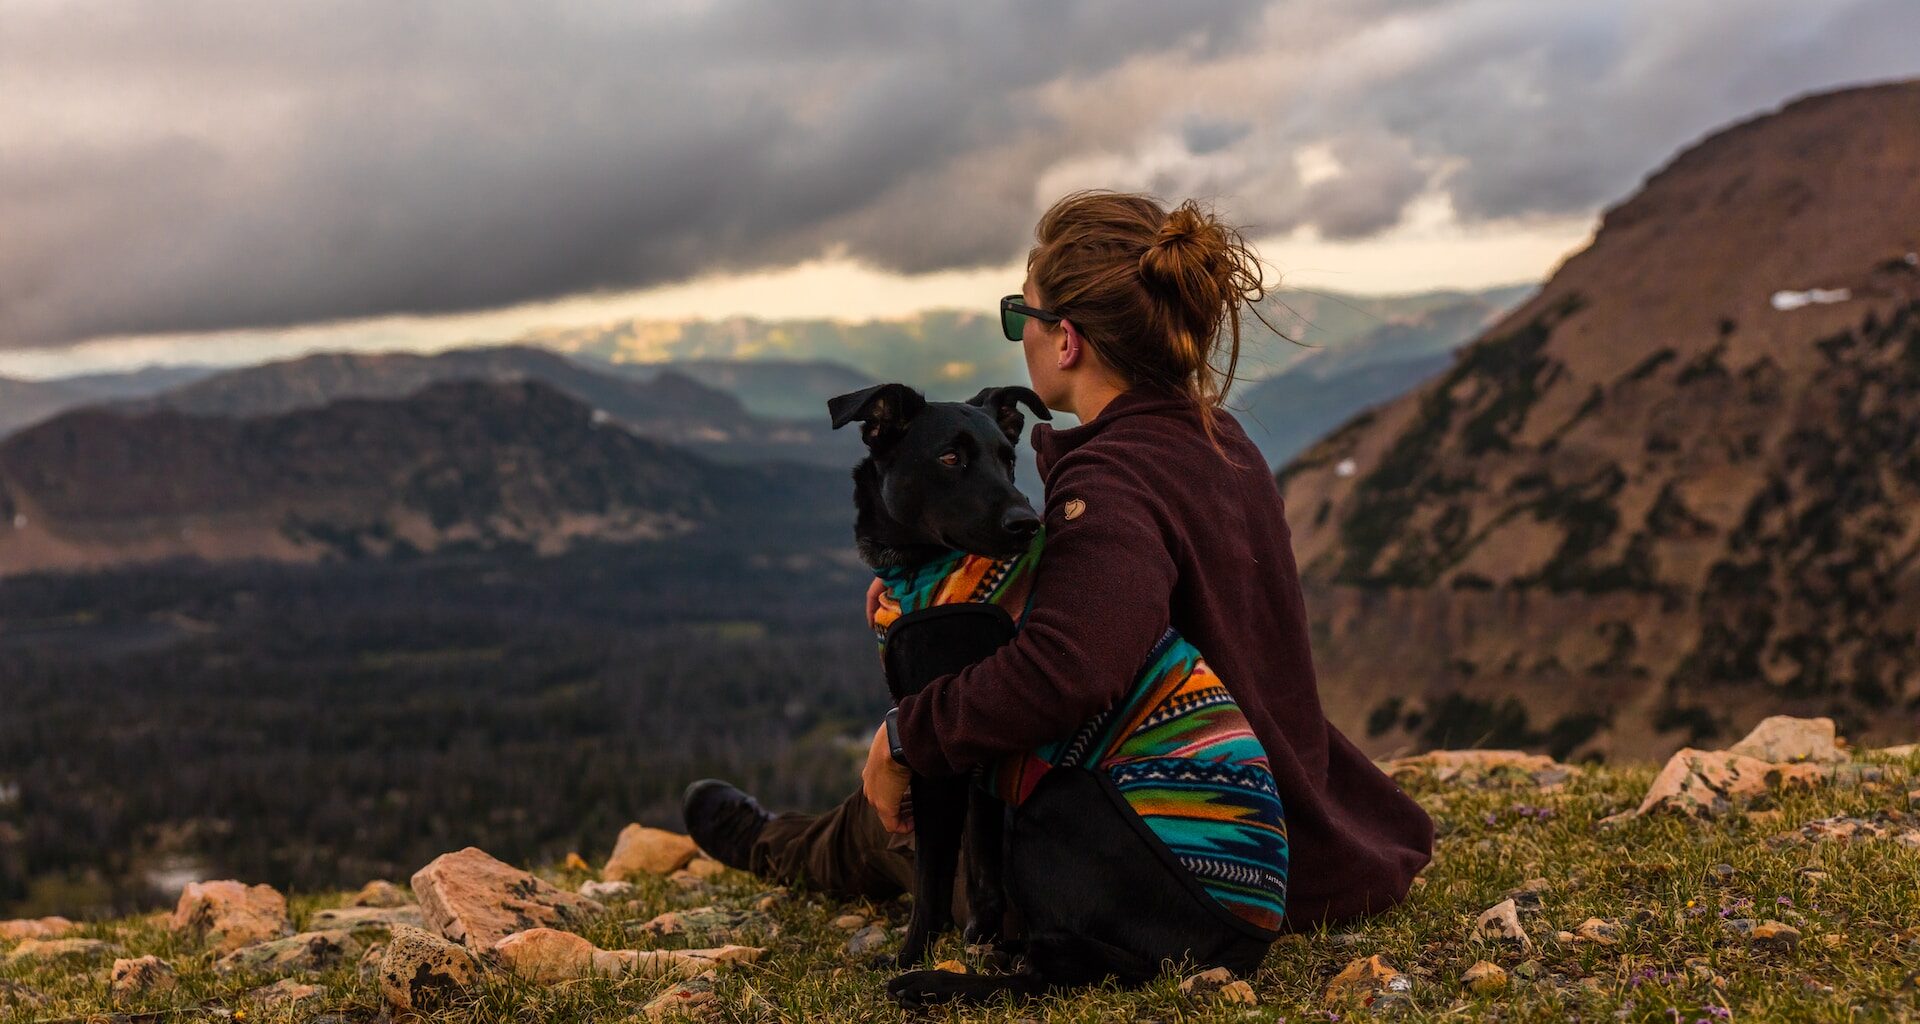 pies ze swoją panią, siedzą na trawie w górach